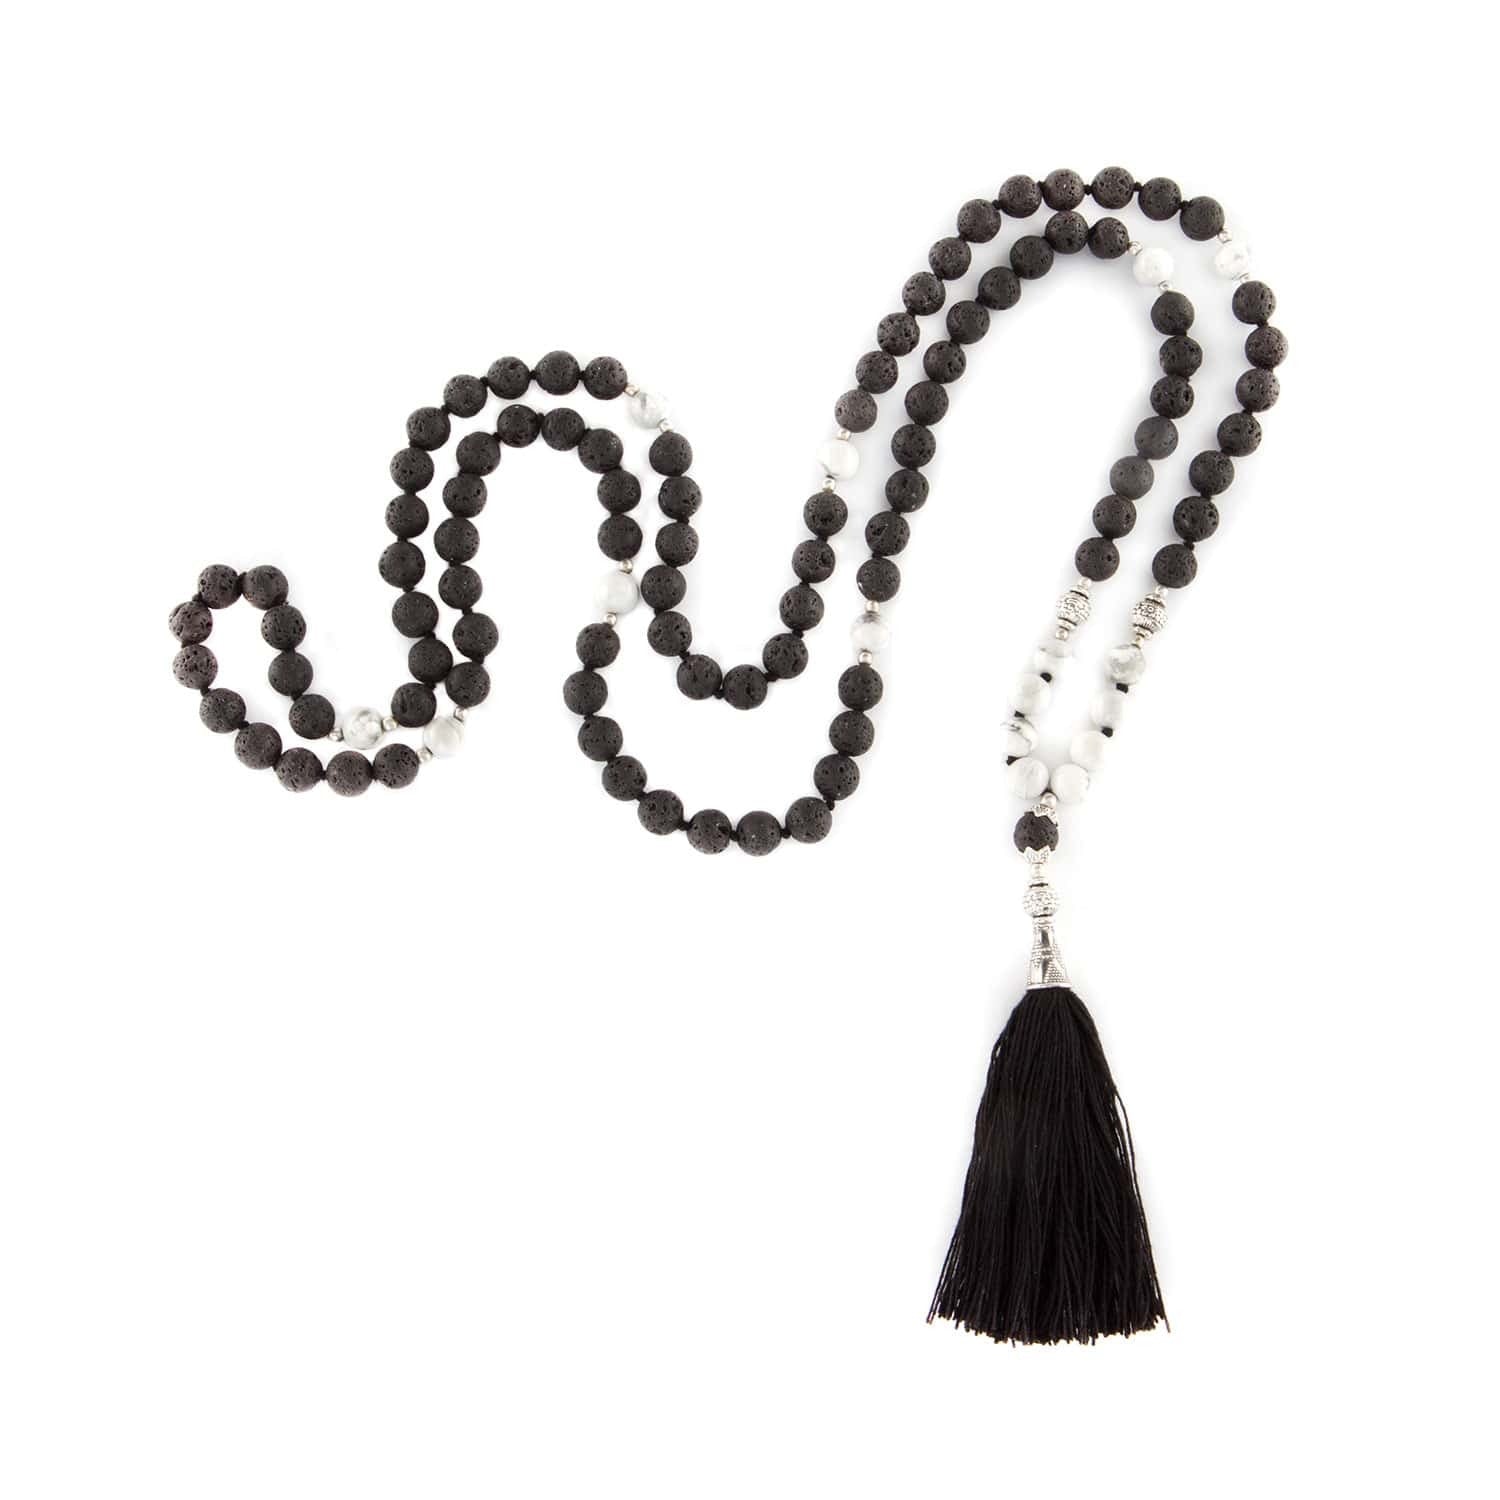 Billede af Mala lavasten/okenit med sort kvast, 108 perler - Bodhi